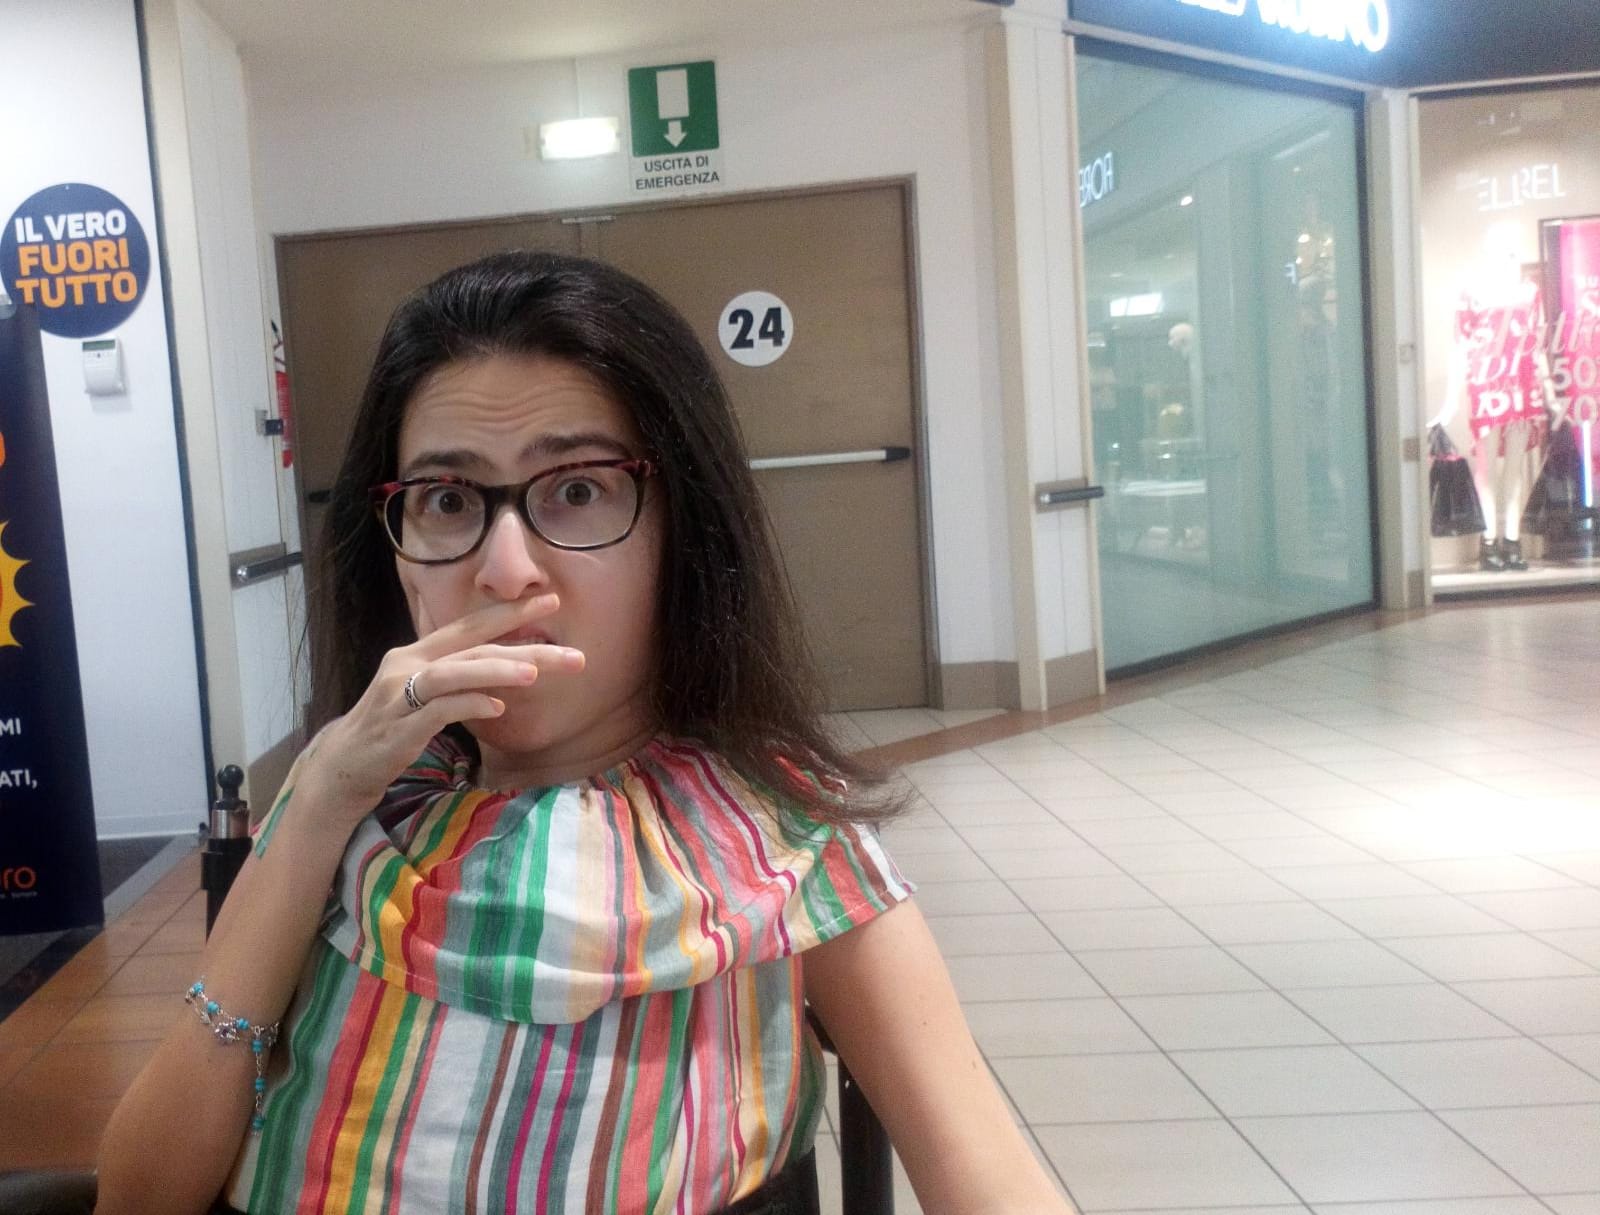 Maria Chiara in un centro commerciale seduta sulla sua sedia con una mano sulla bocca